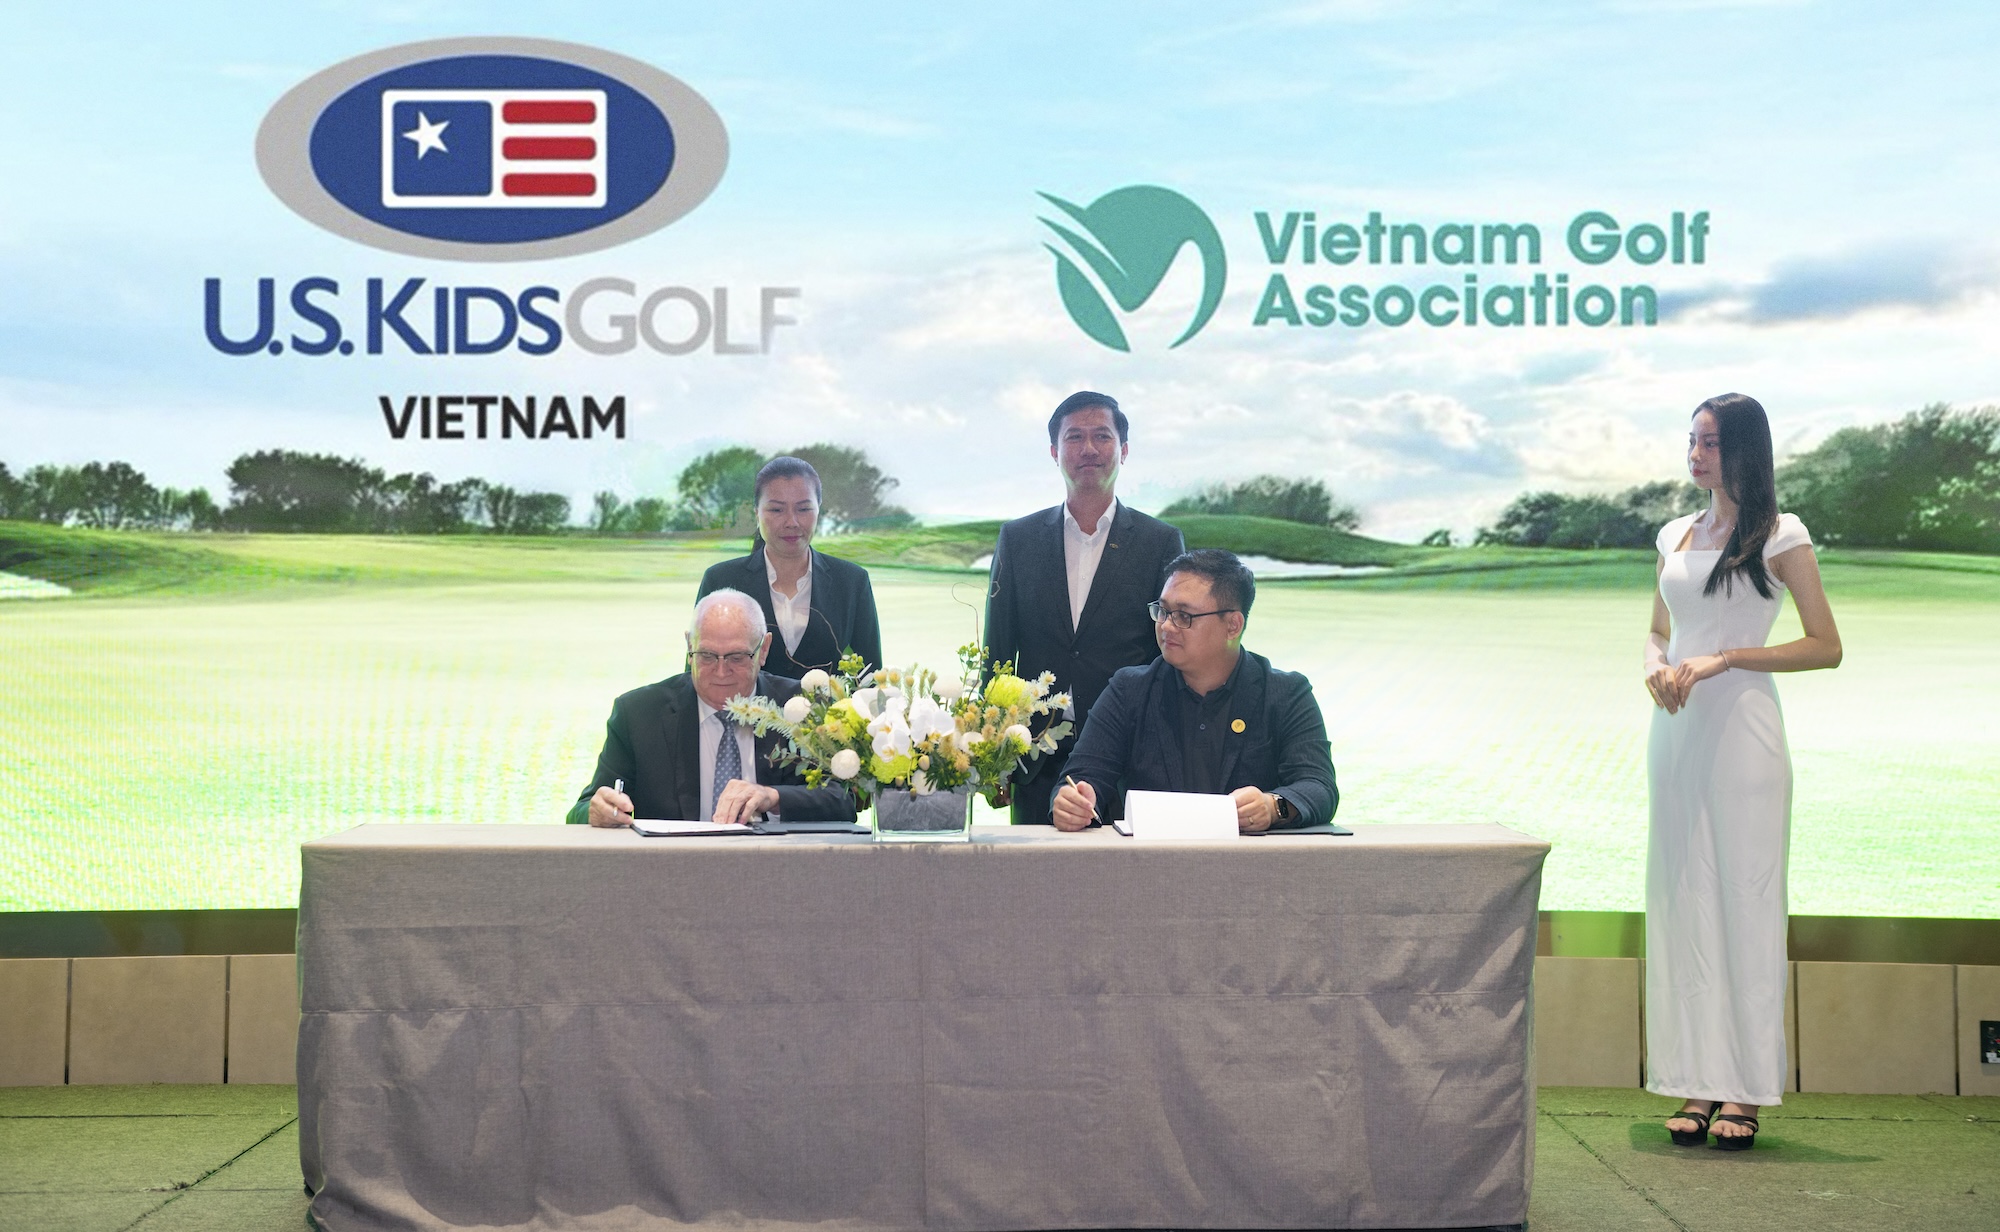 Ông Vũ Nguyên - Phó chủ tịch kiêm Tổng thư ký VGA ký kết hợp tác cùng ông Harry Smith - đại diện U.S. Kids Golf Việt Nam